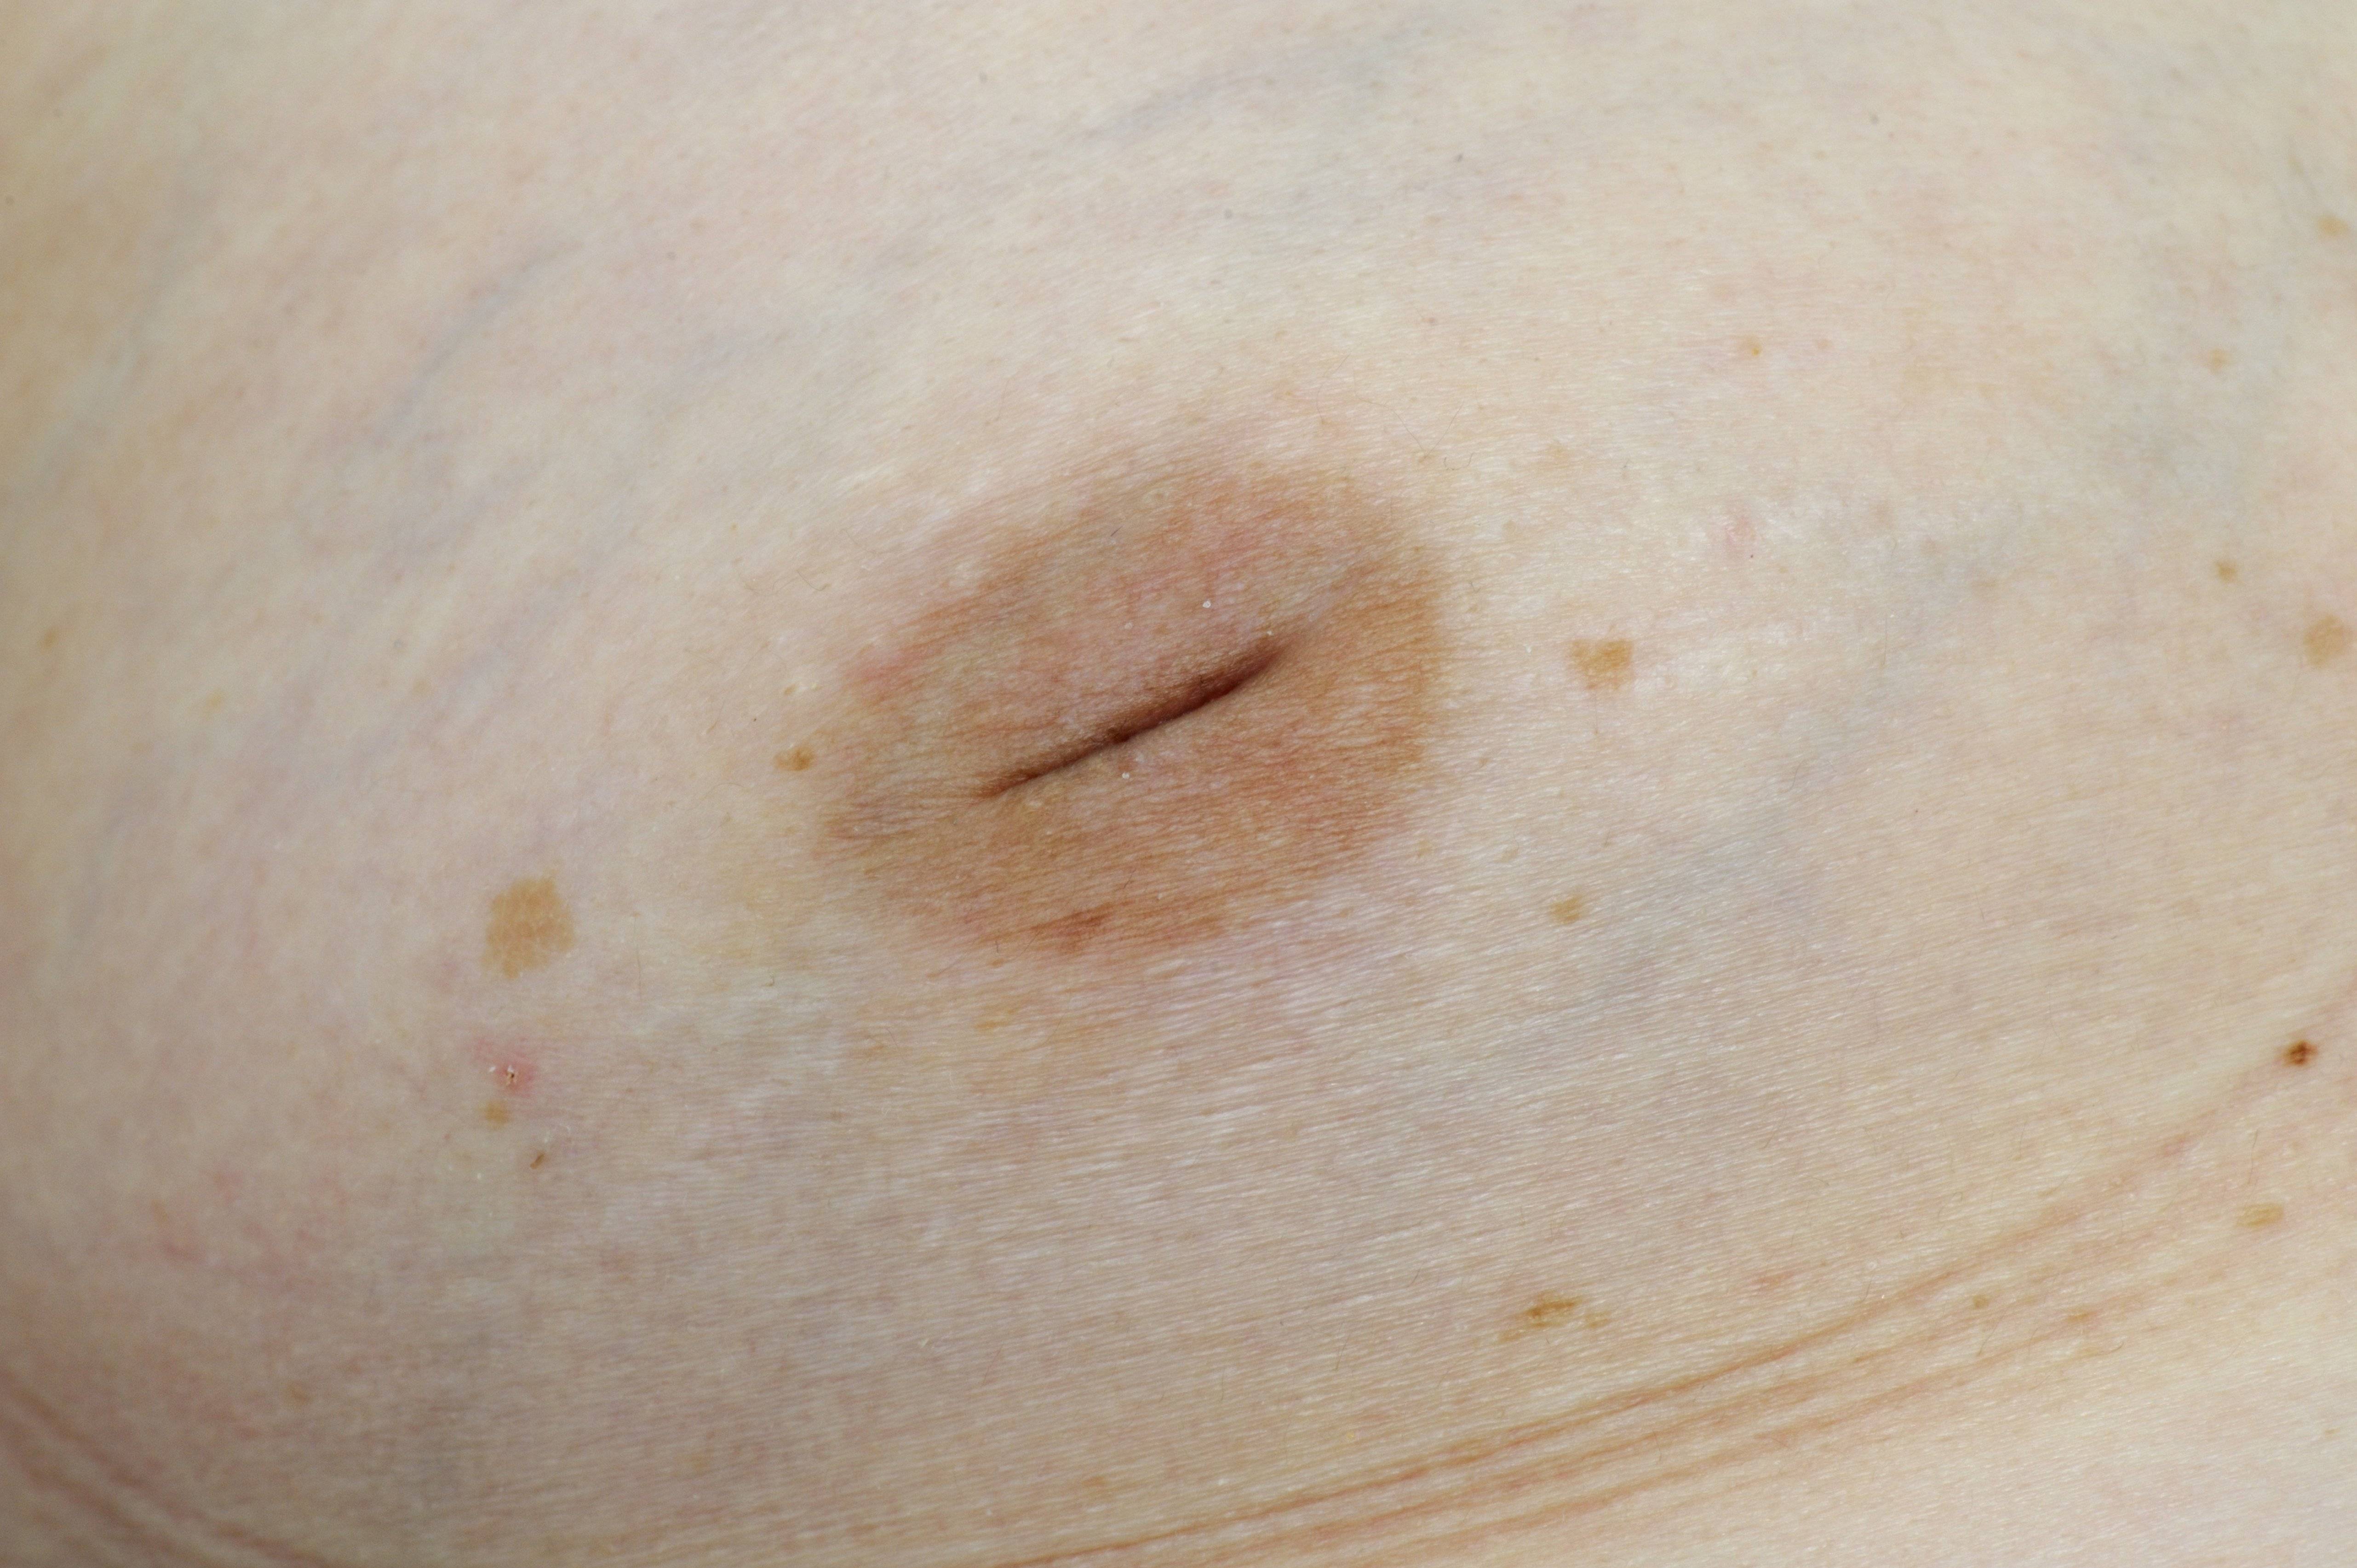 Реабилитация после маммопластики - уход за отеками груди, советы и ограничения